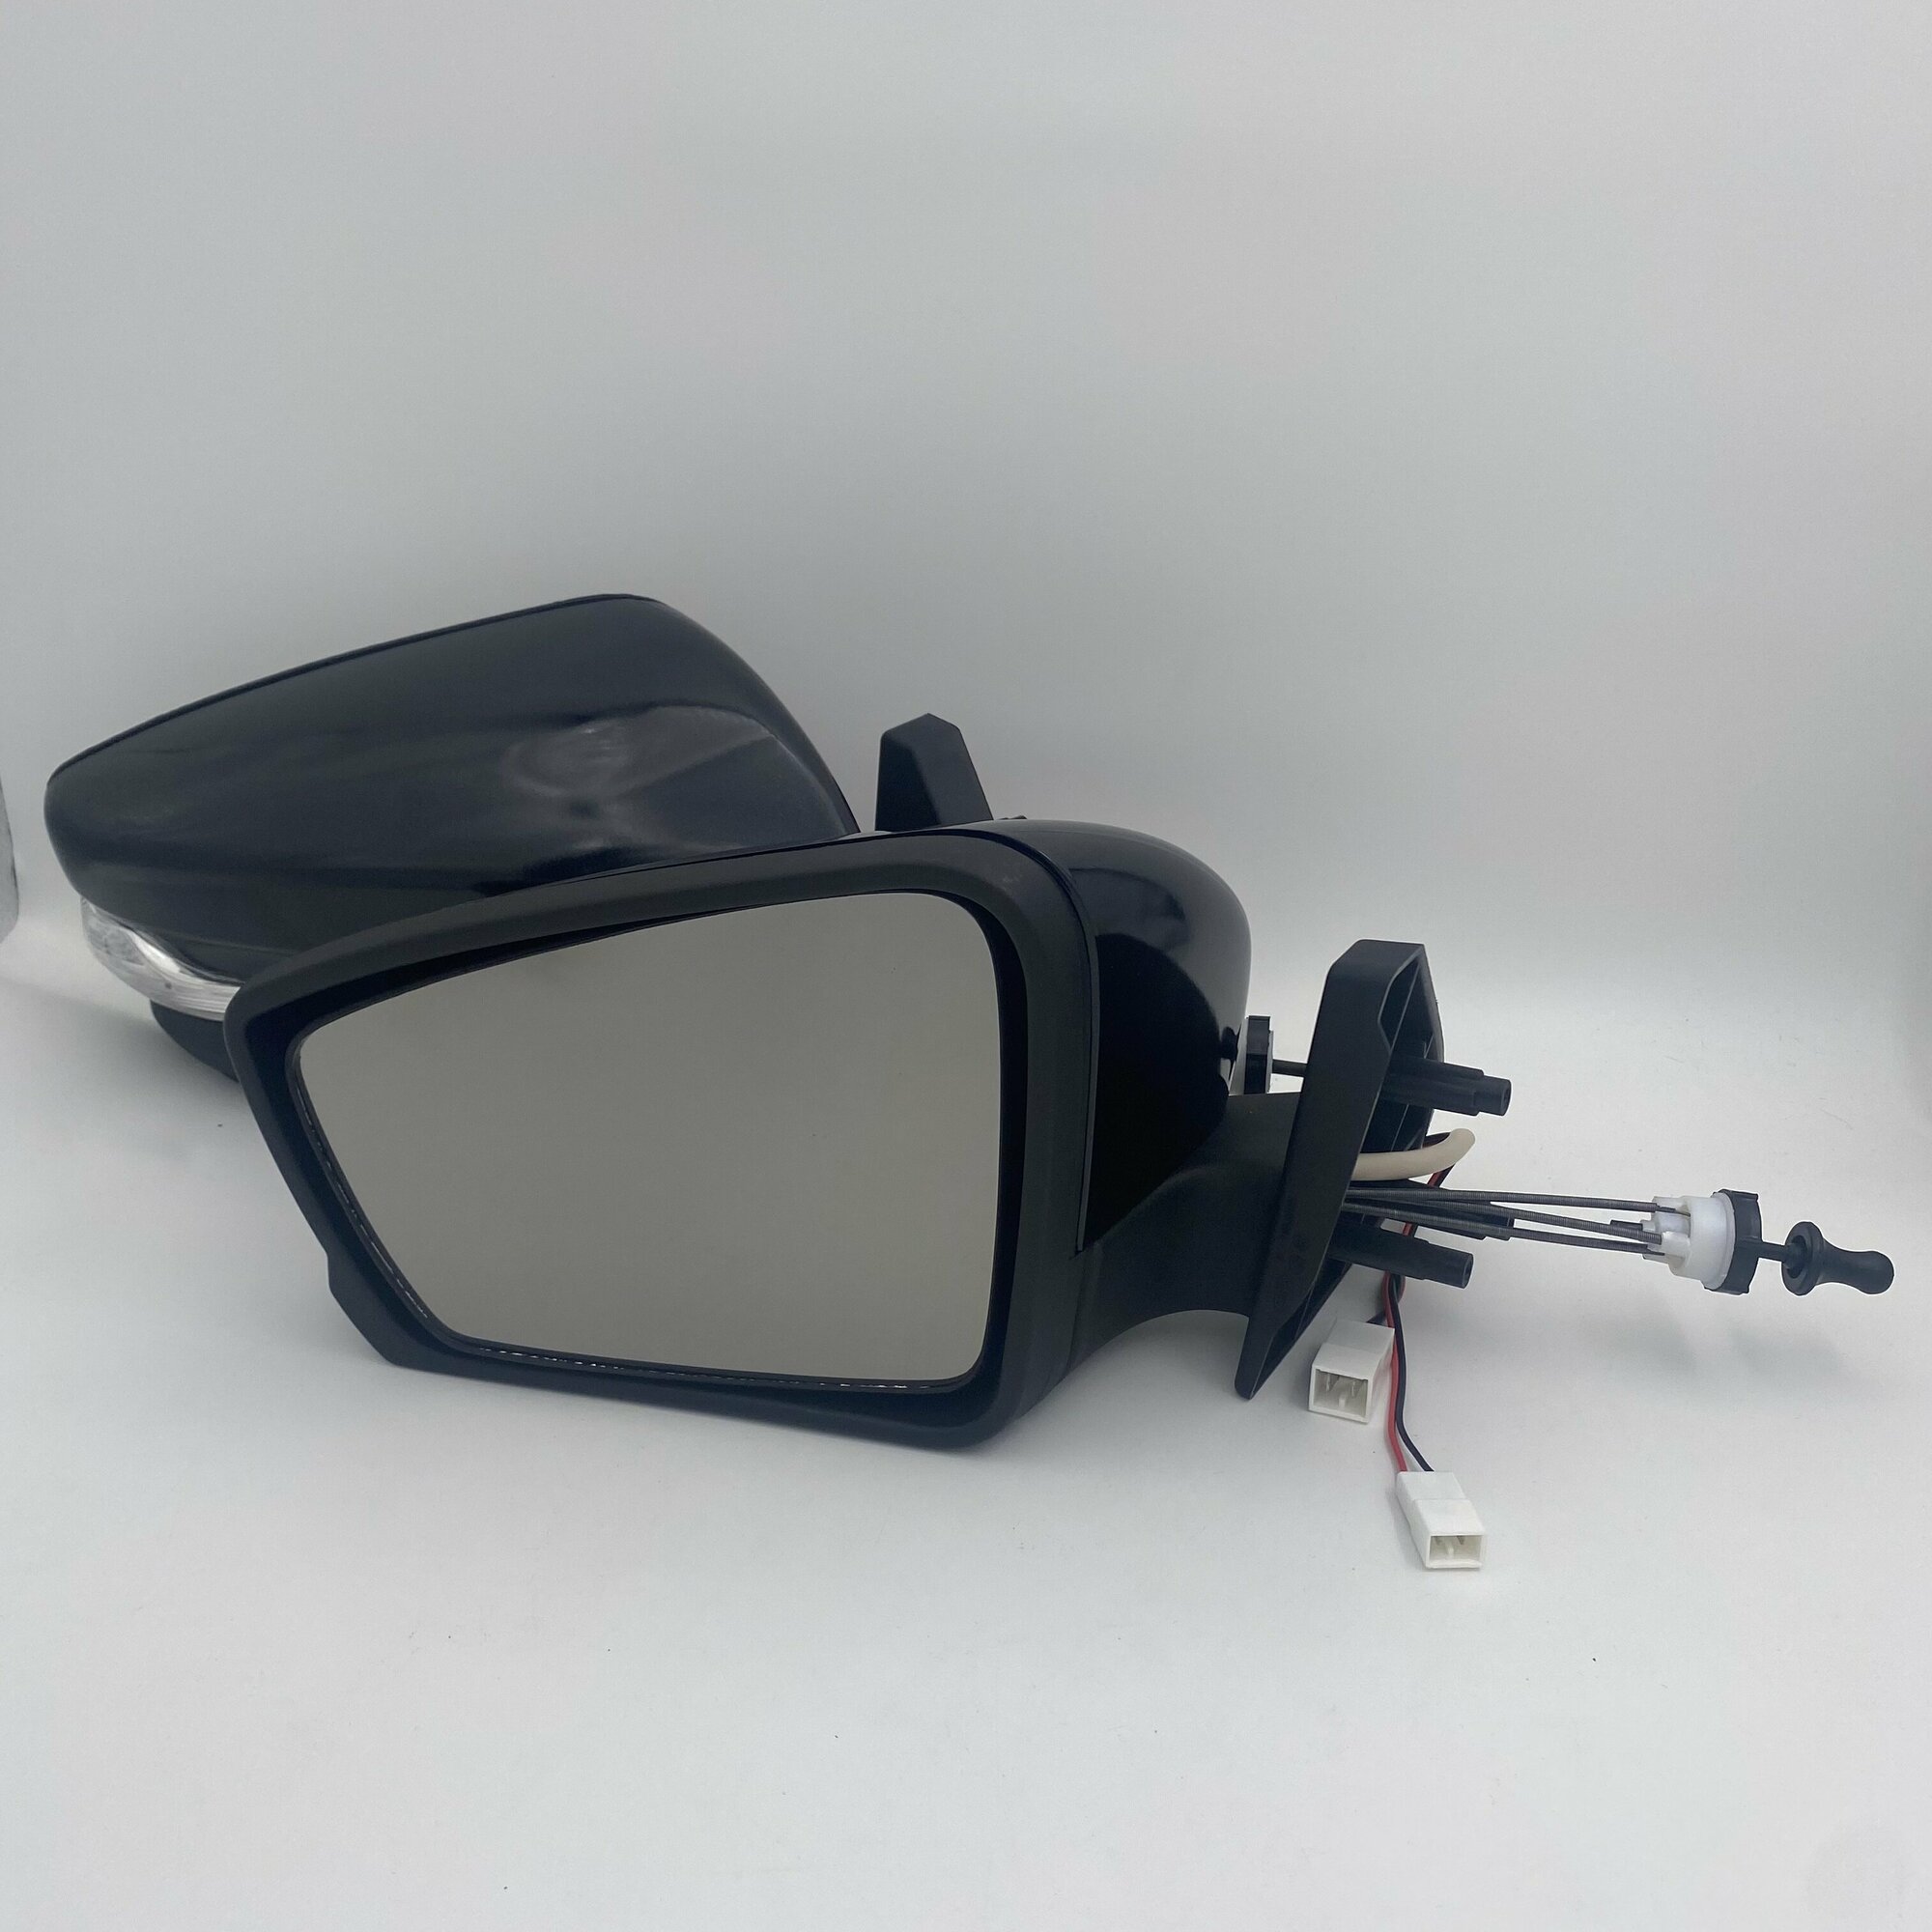 Зеркало боковое комплект ВАЗ 2114 адаптированные в корпусе Гранта, повторитель поворота, обогрев, тросовый привод, Черный